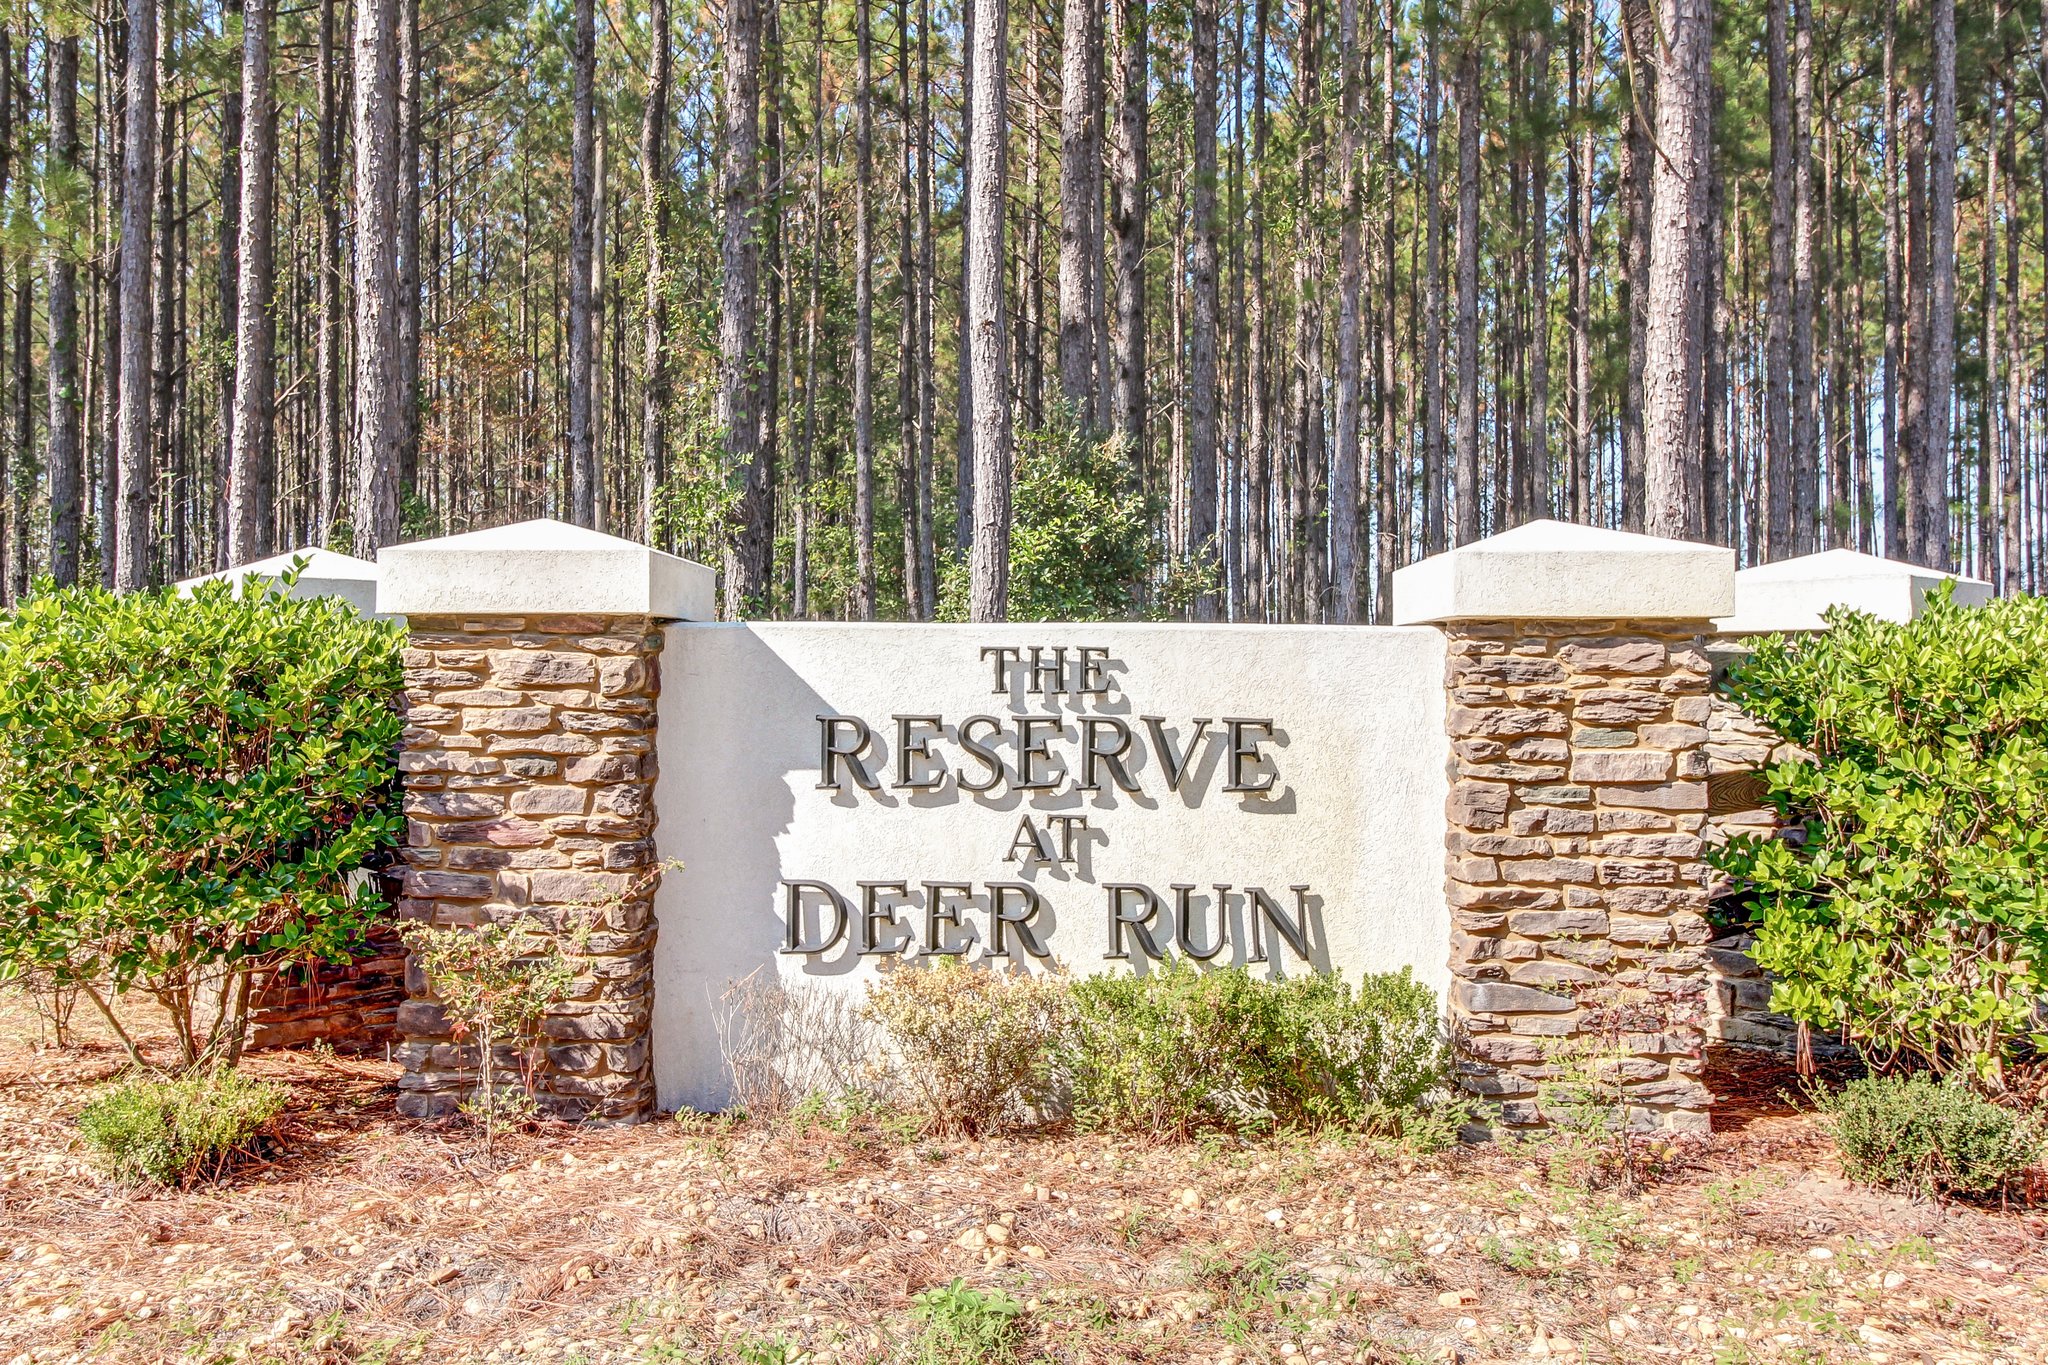 The Reserve at Deer Run